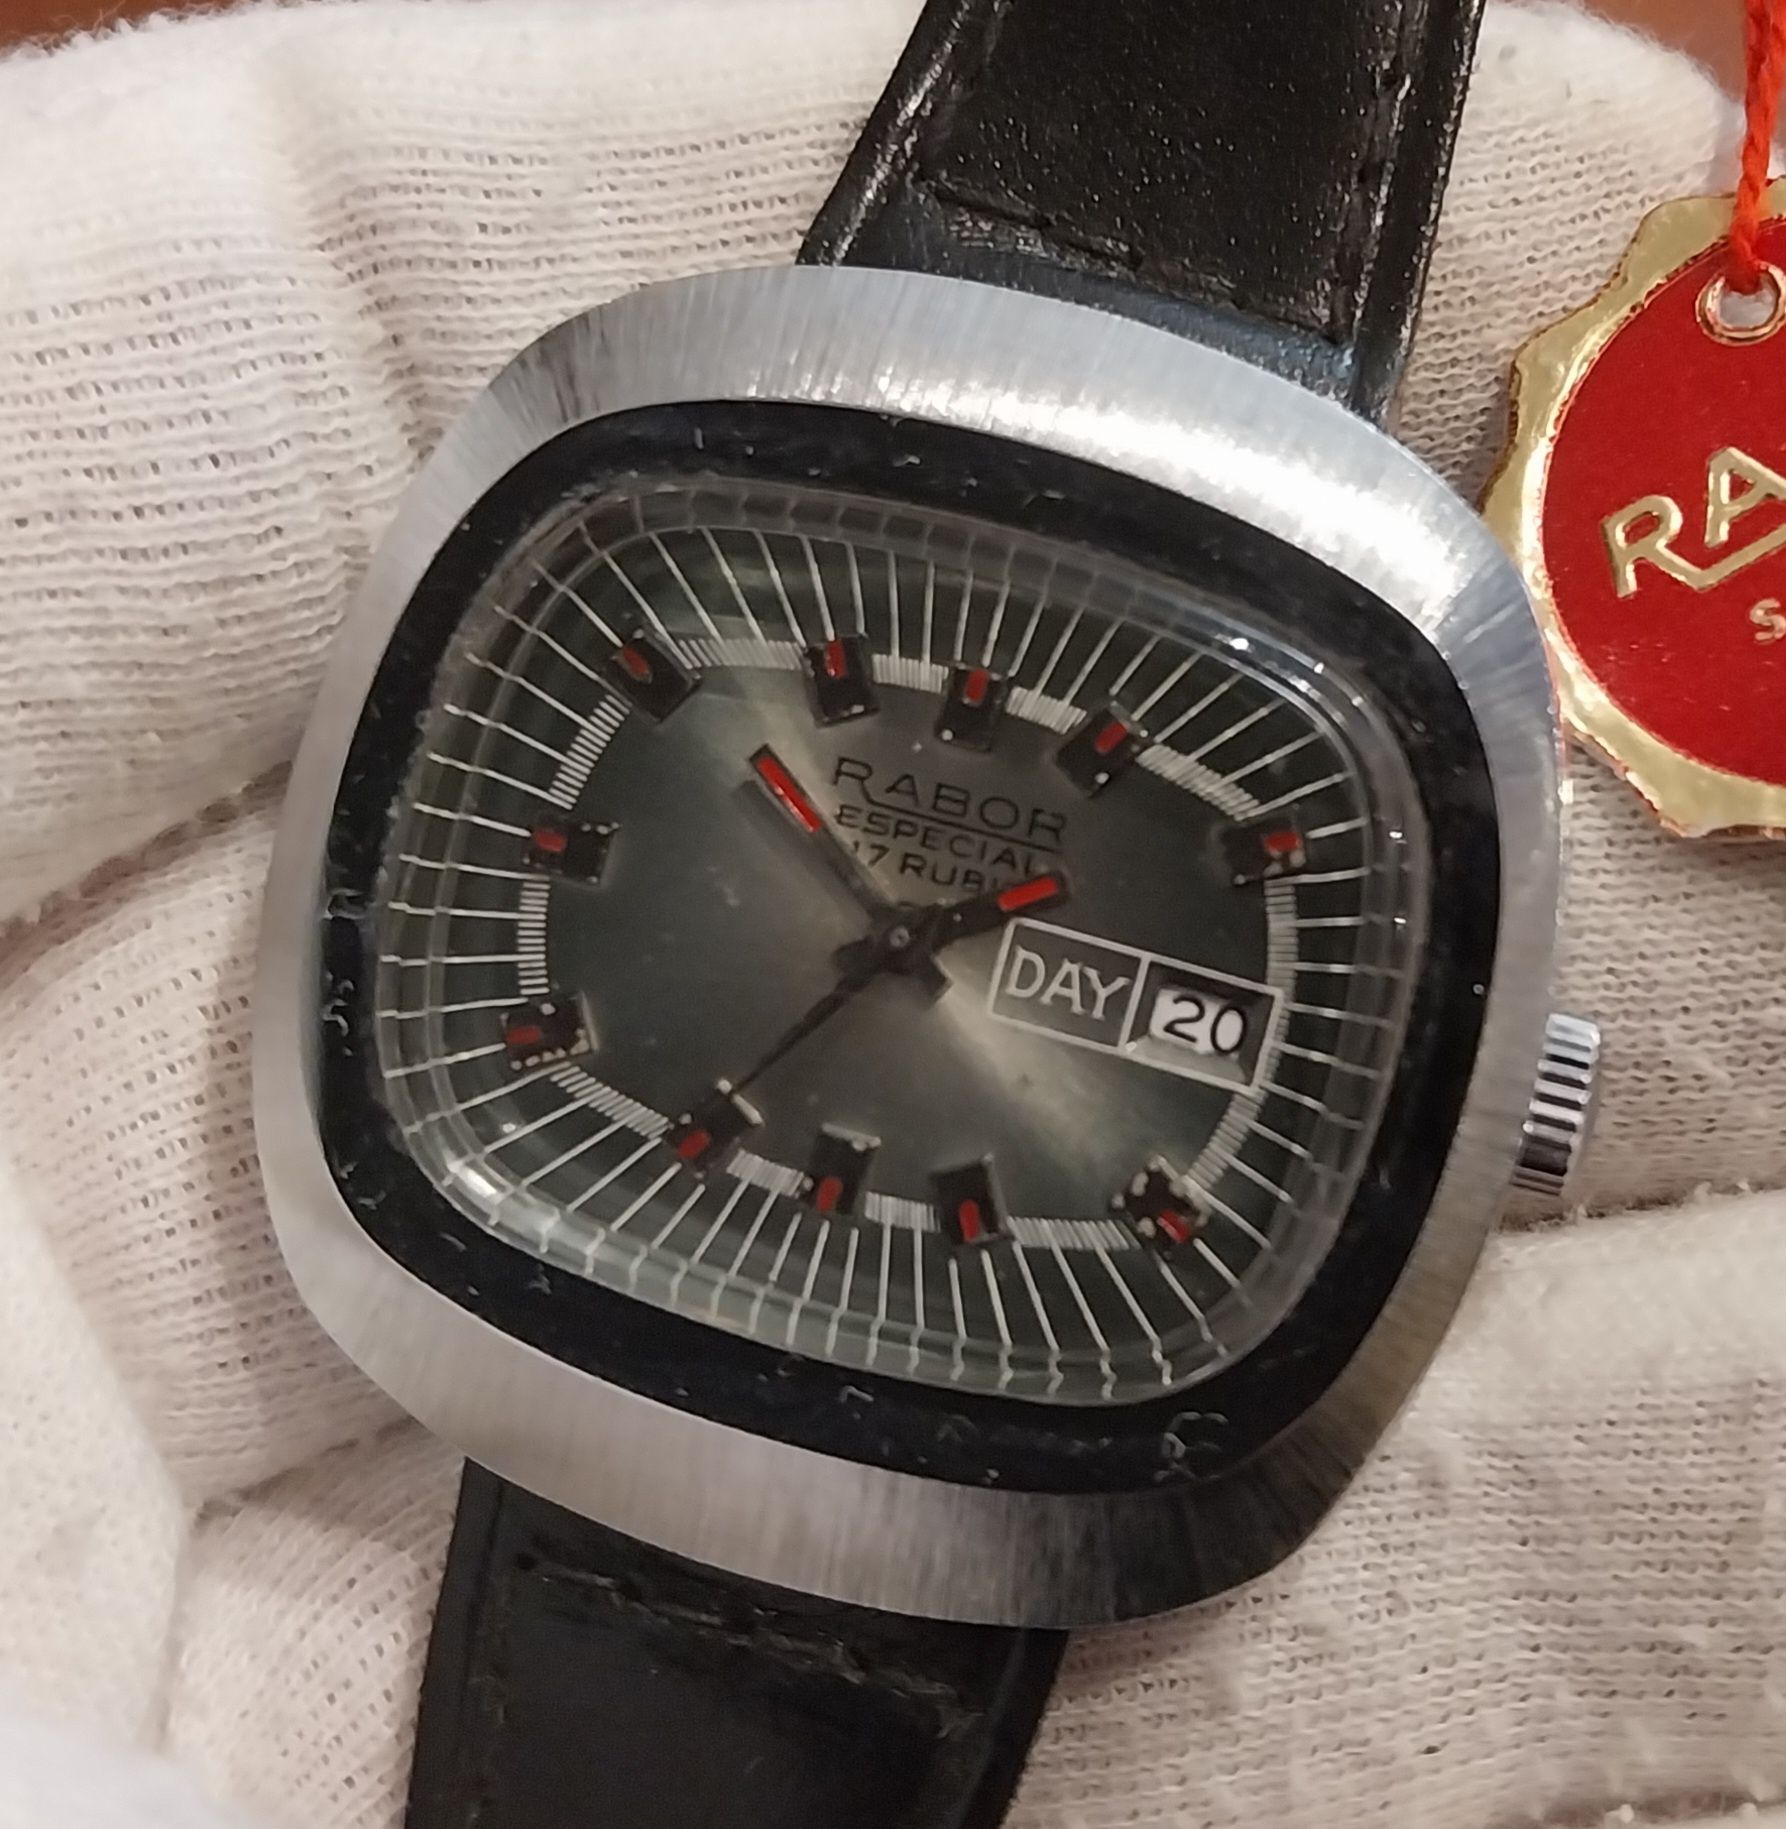 Rabor Especial Relógio Vintage corda manual homem